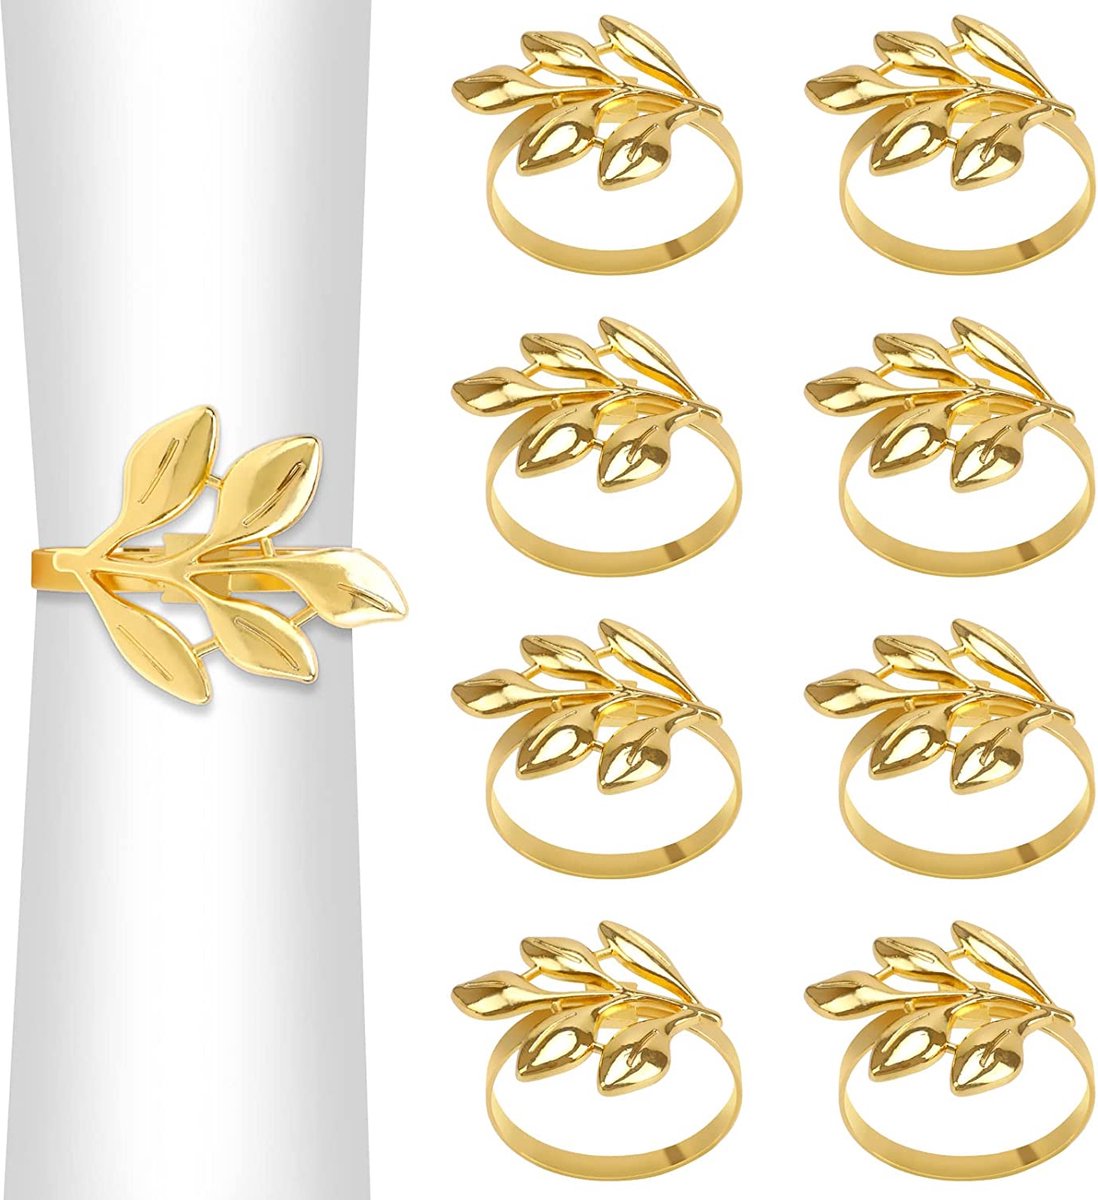 BOTC Servetringen - Set van 6 Gouden servetringen - Triangle - voor Bruiloft, Banket, Jubileum, Feest, Verjaardag, Festival - BOTC